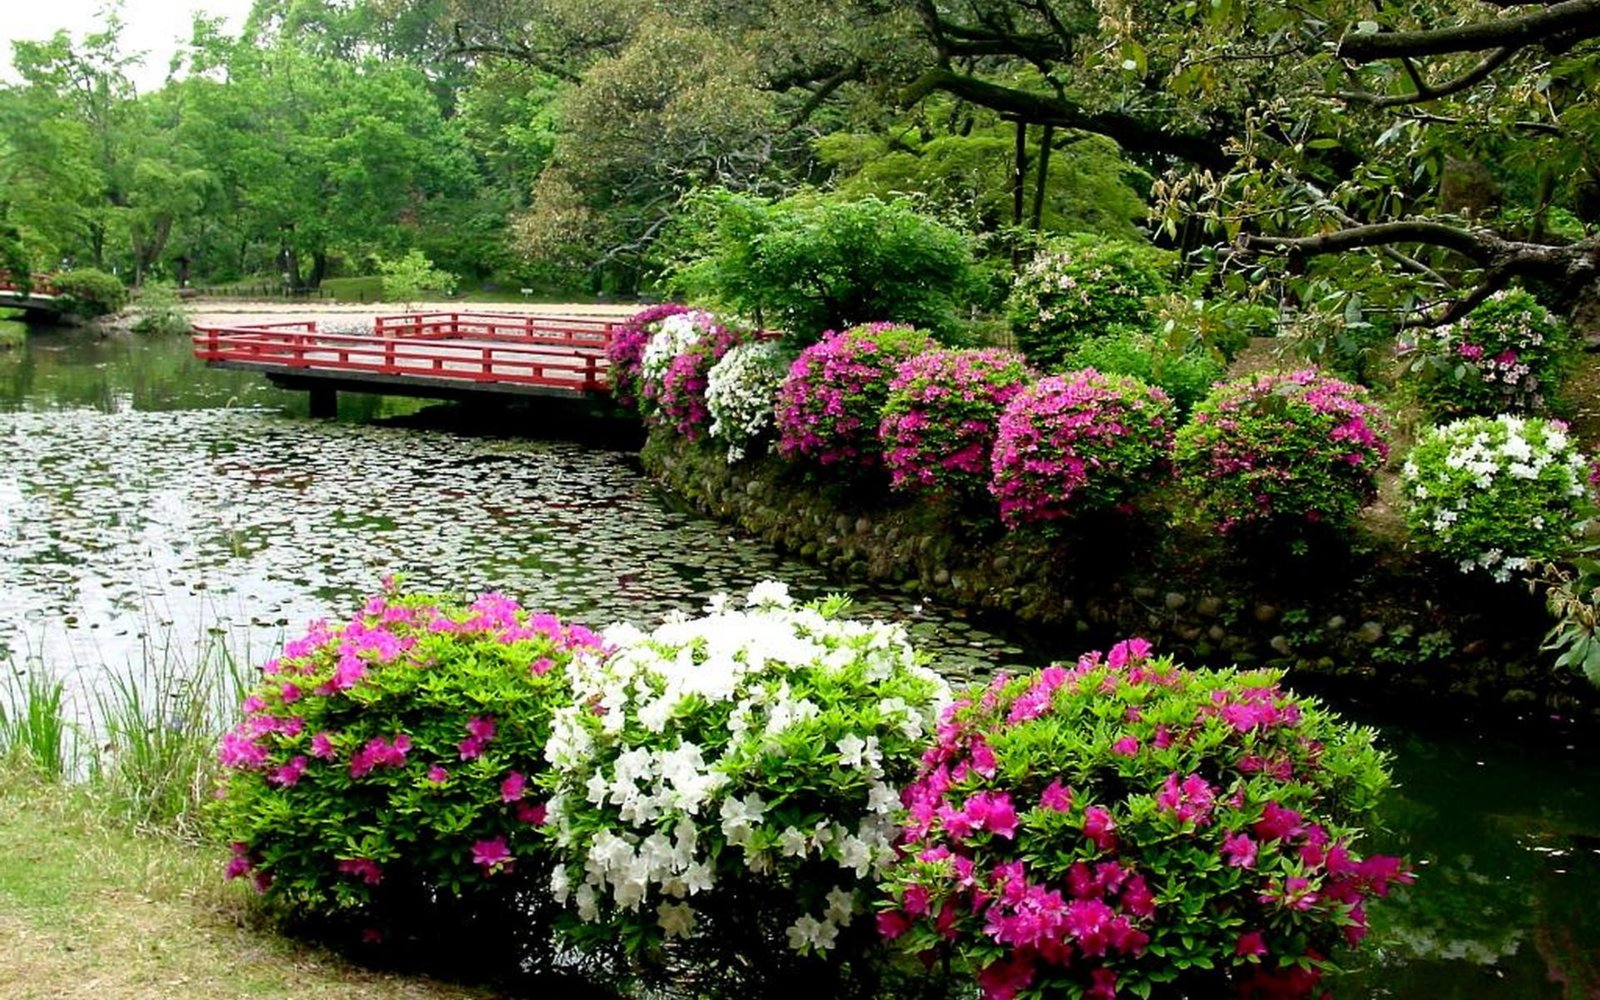 227-2273095_japanese-garden-wallpaper-flower-garden-wallpaper-hd-full.jpg